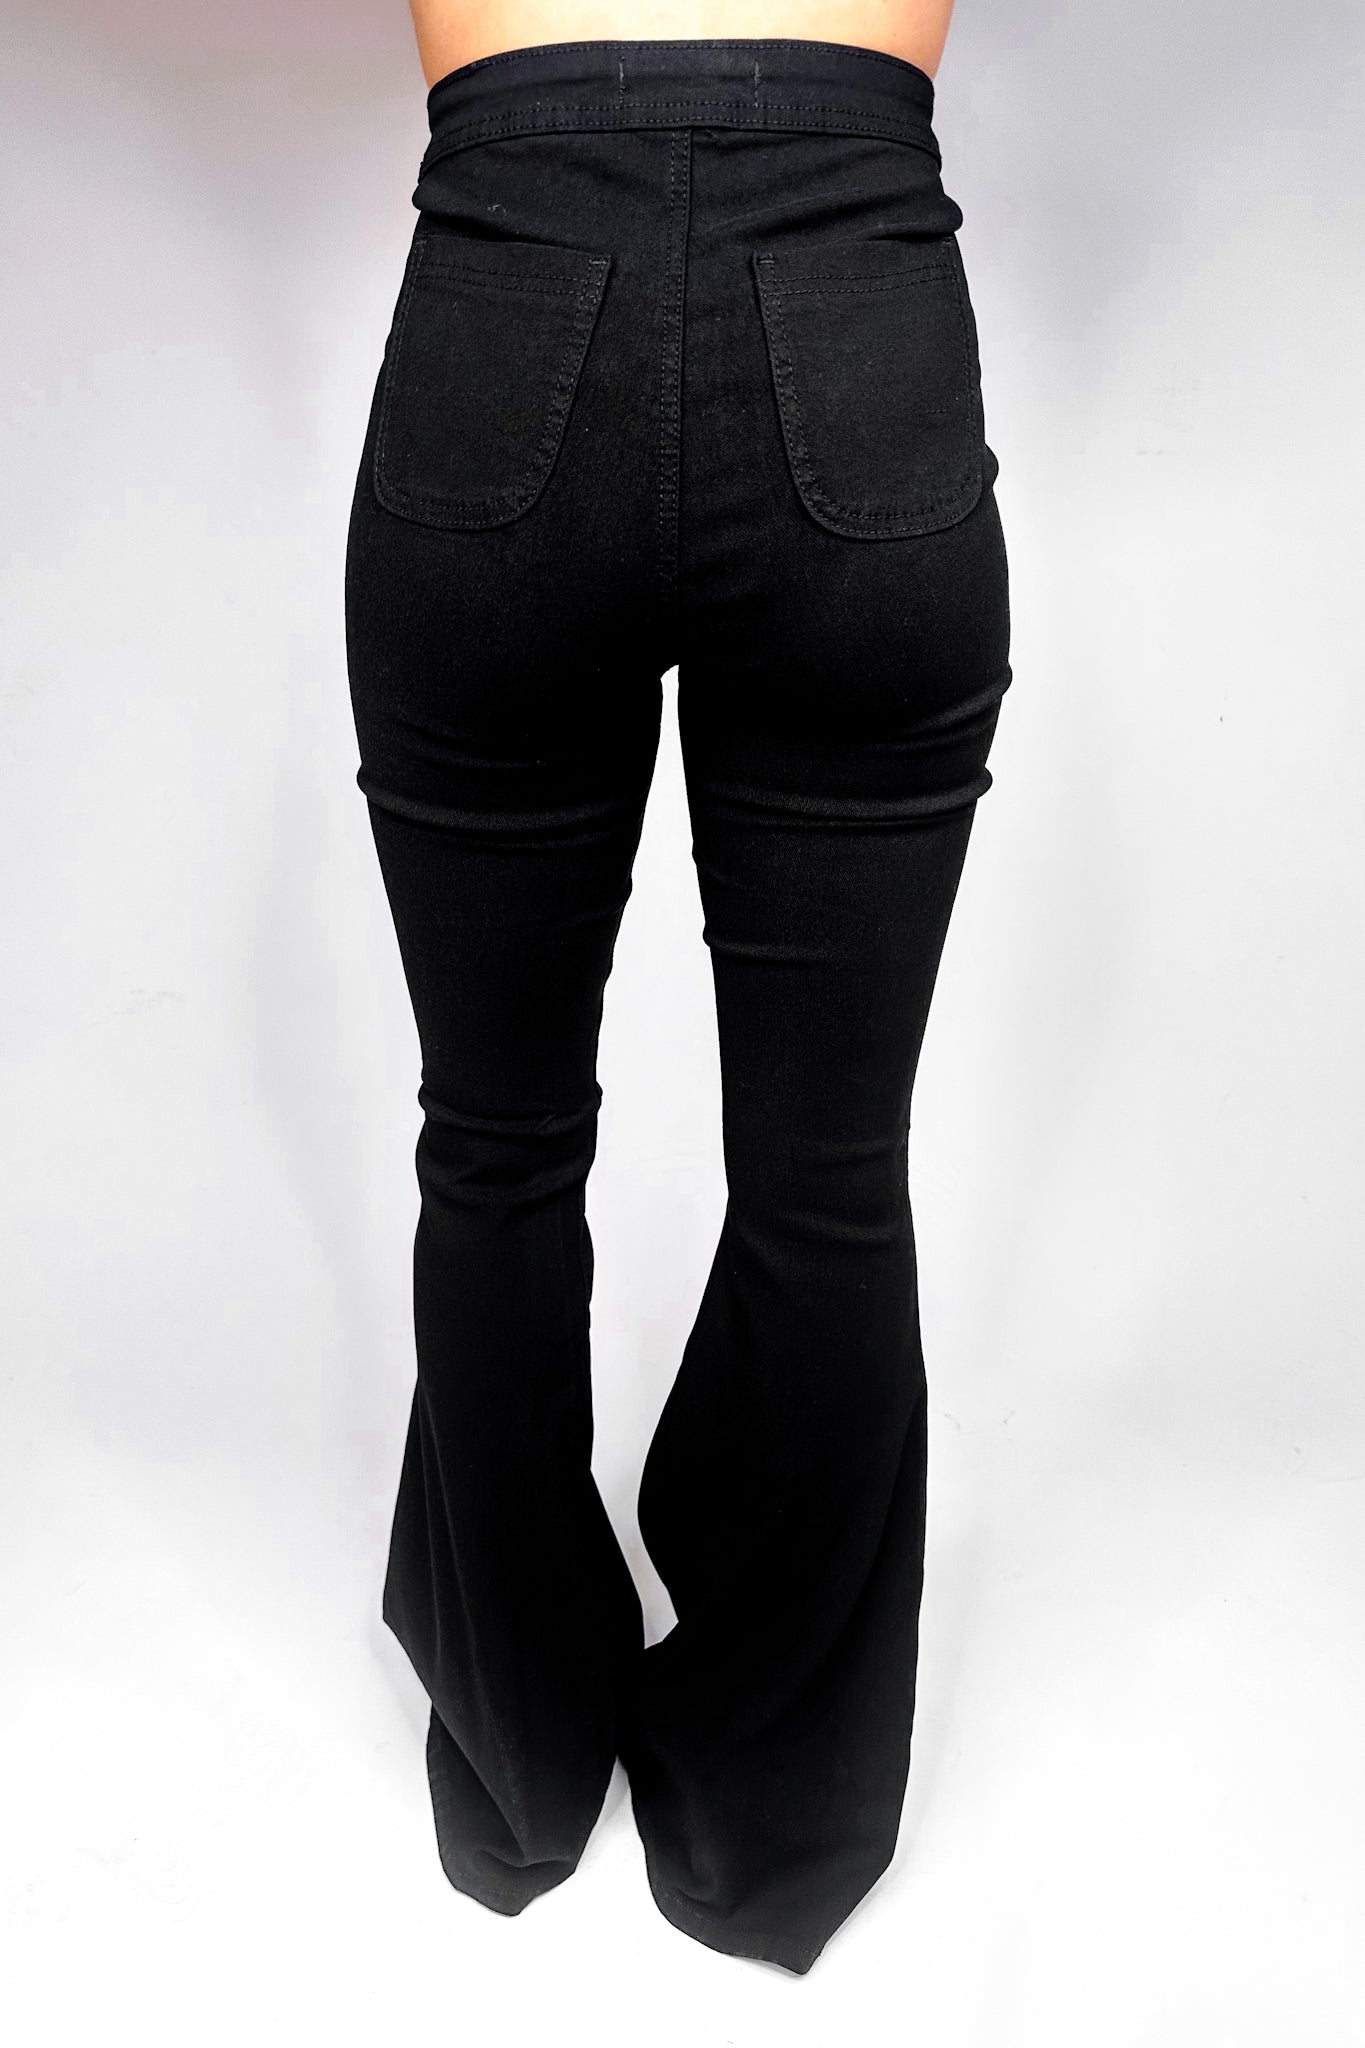 The Kim K Black Stretchy Flare Jean